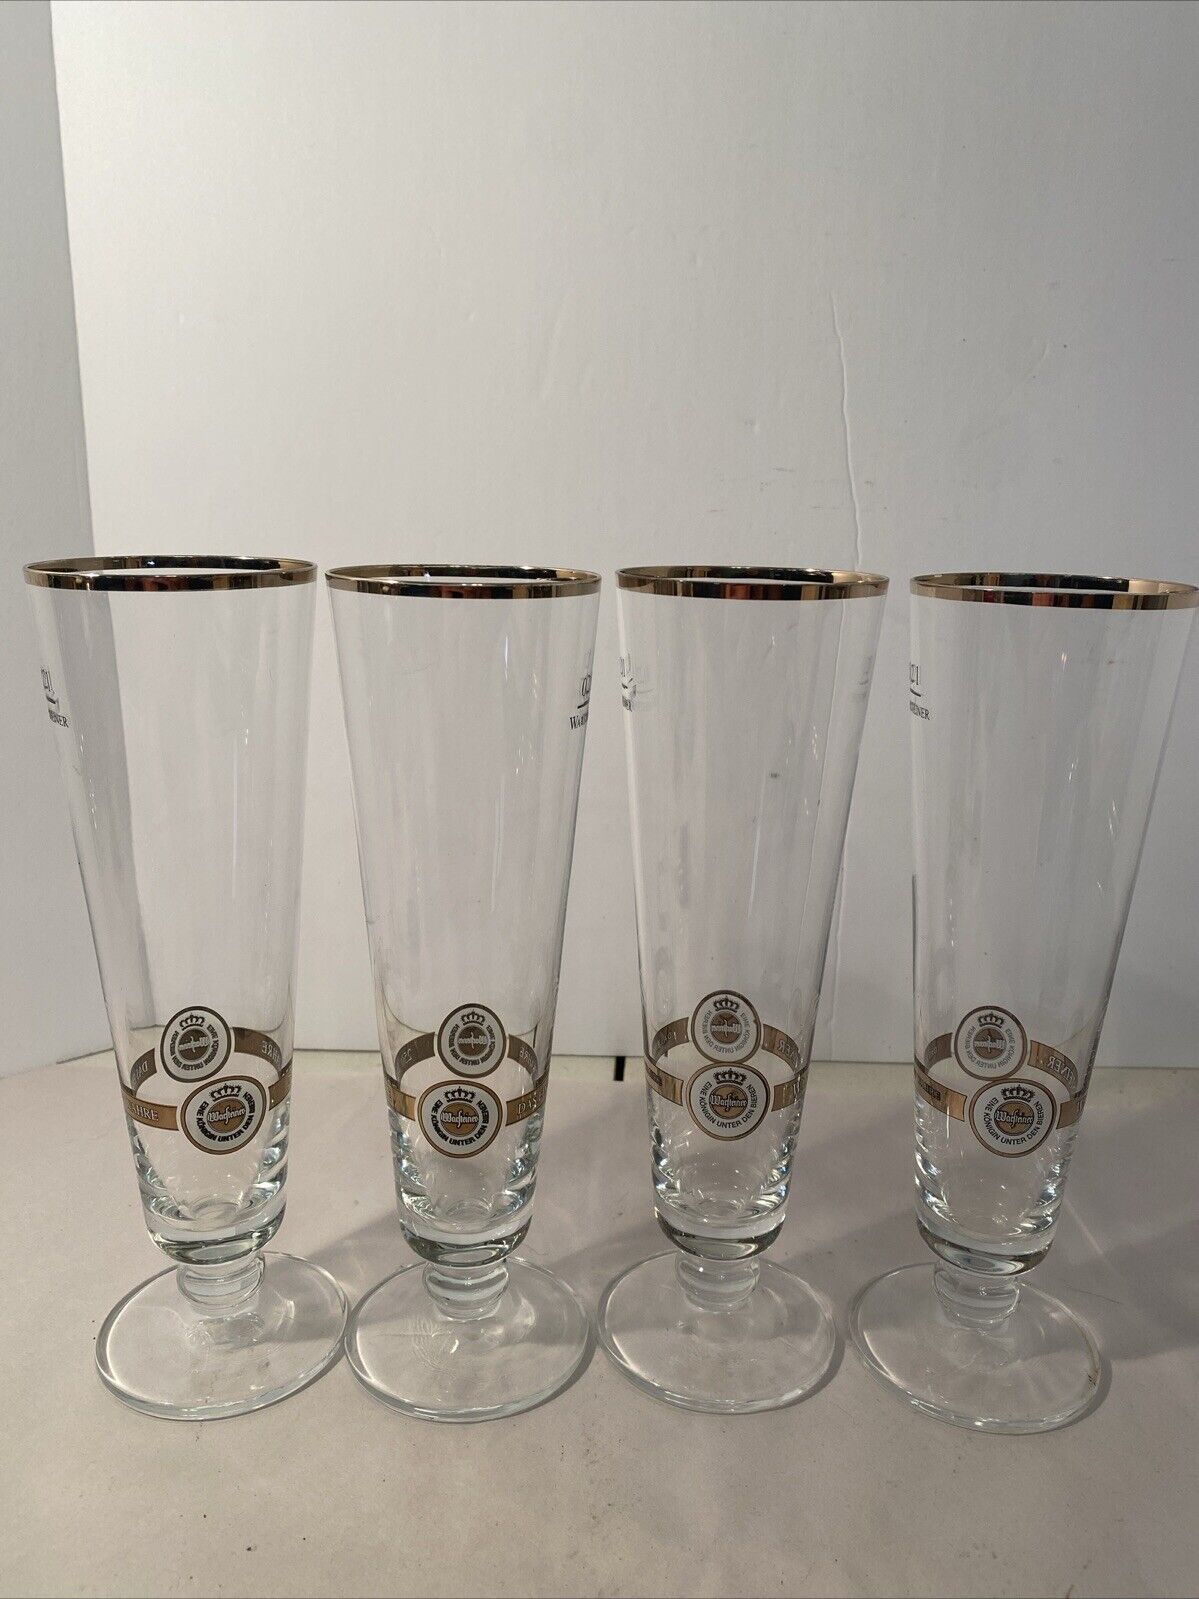 4 WARSTEINER Beer Glasses - 8” Tall - Gold Rim .2L- Das Einzig Wahre